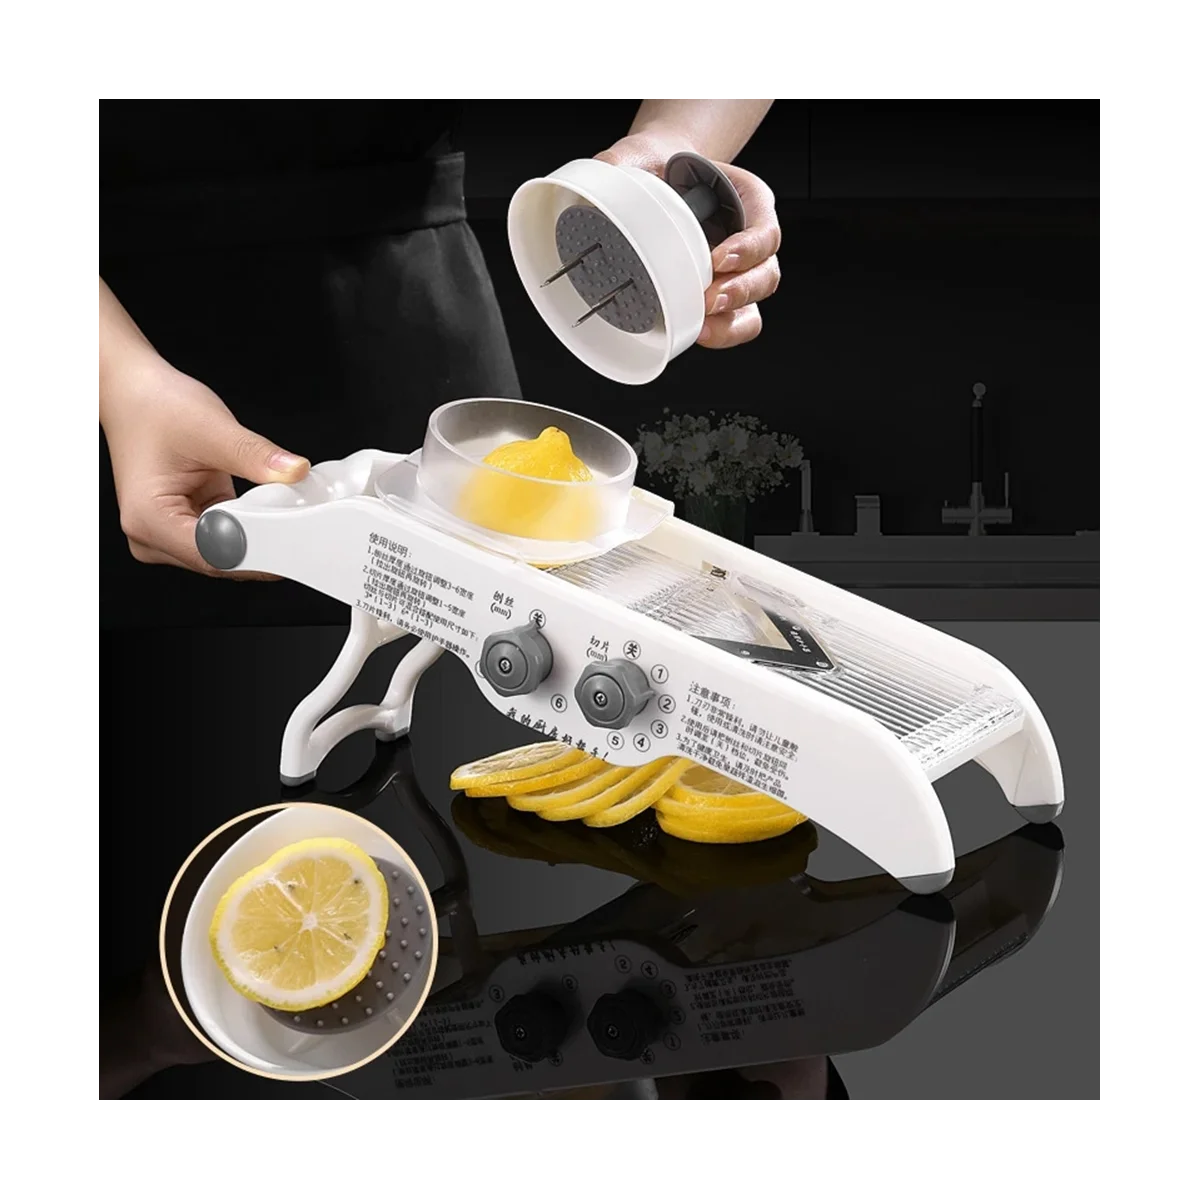 

Многофункциональная лимонная плитка с корзиной, измельчитель для фруктов, картофеля, моркови, резак, кухонные аксессуары